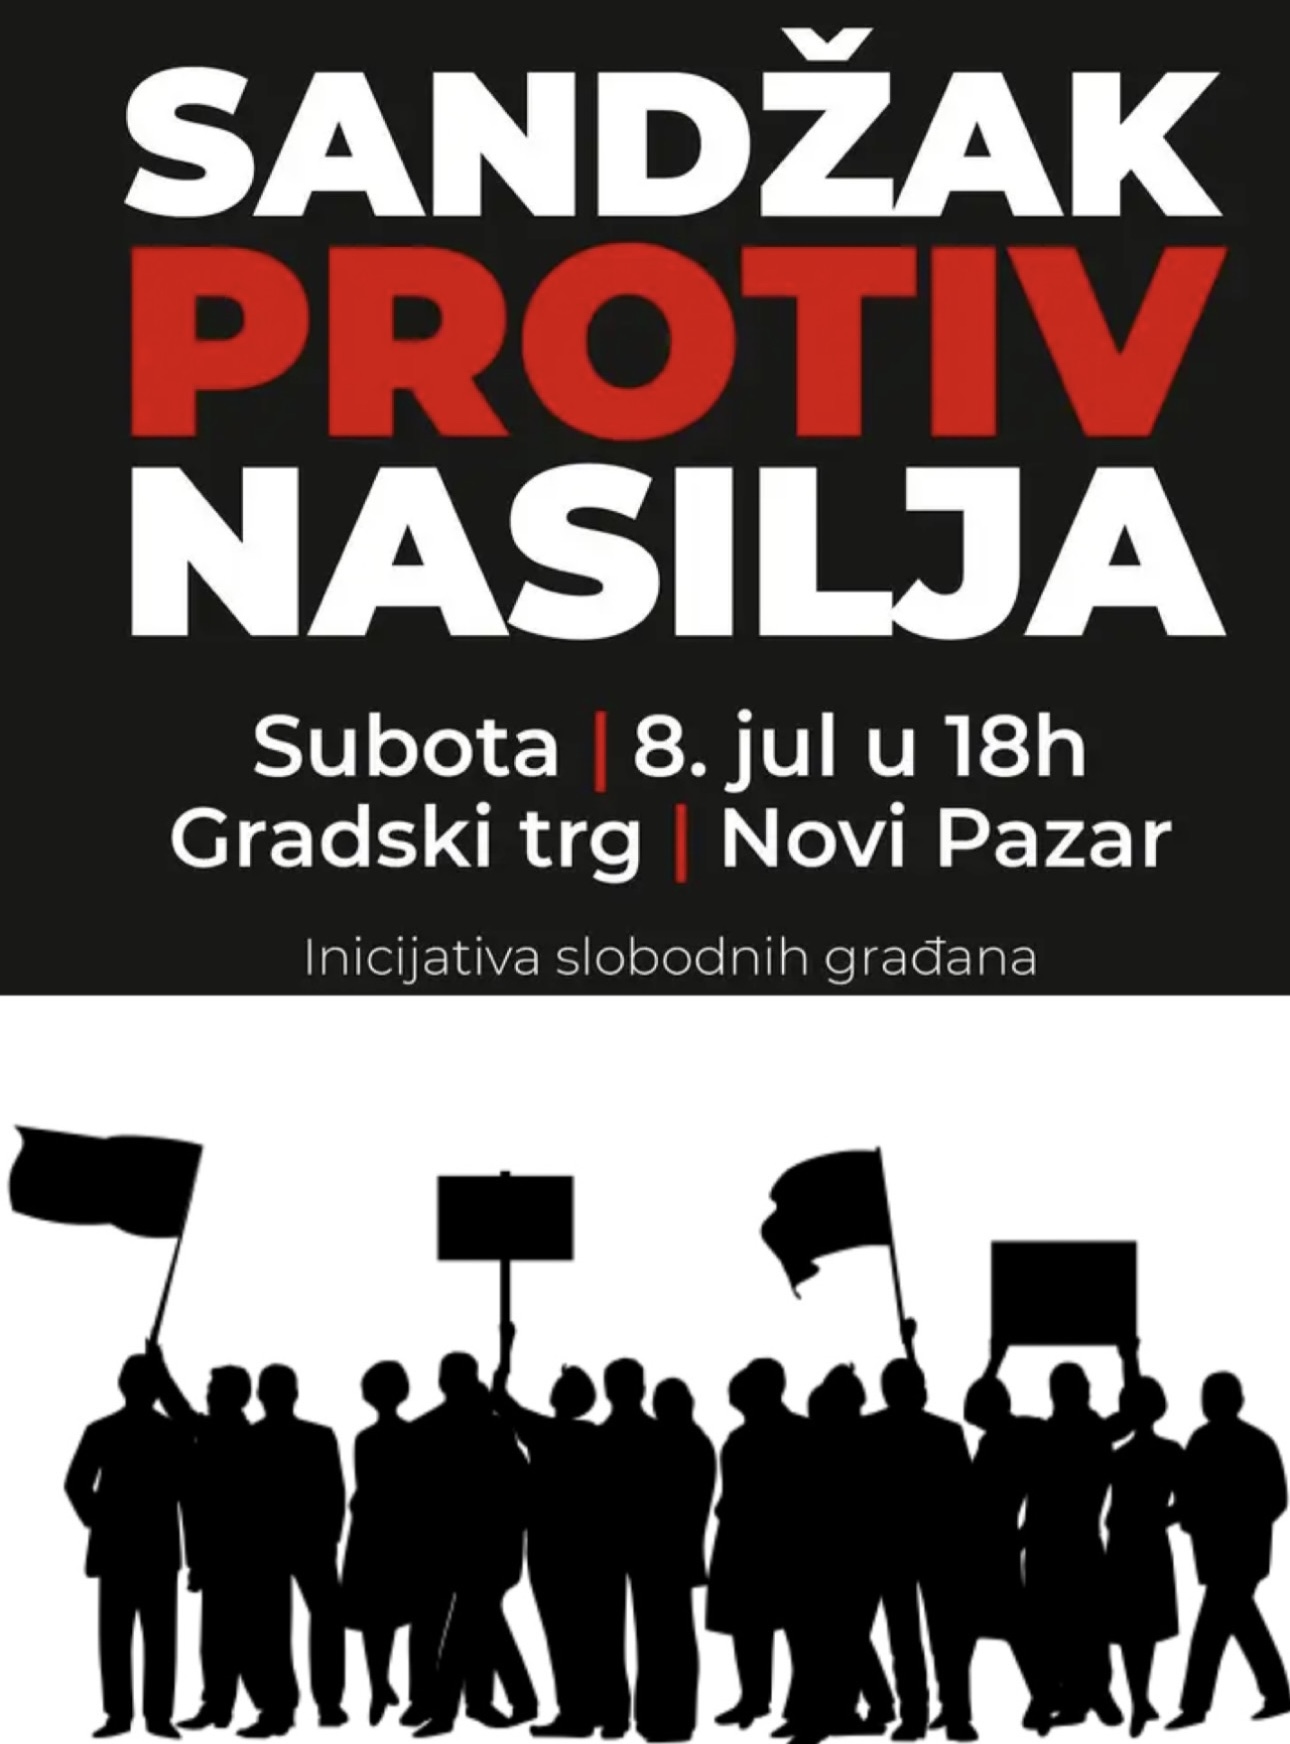 NOVI PAZAR Protest “Sandžak protiv nasilja” održaće se sutra